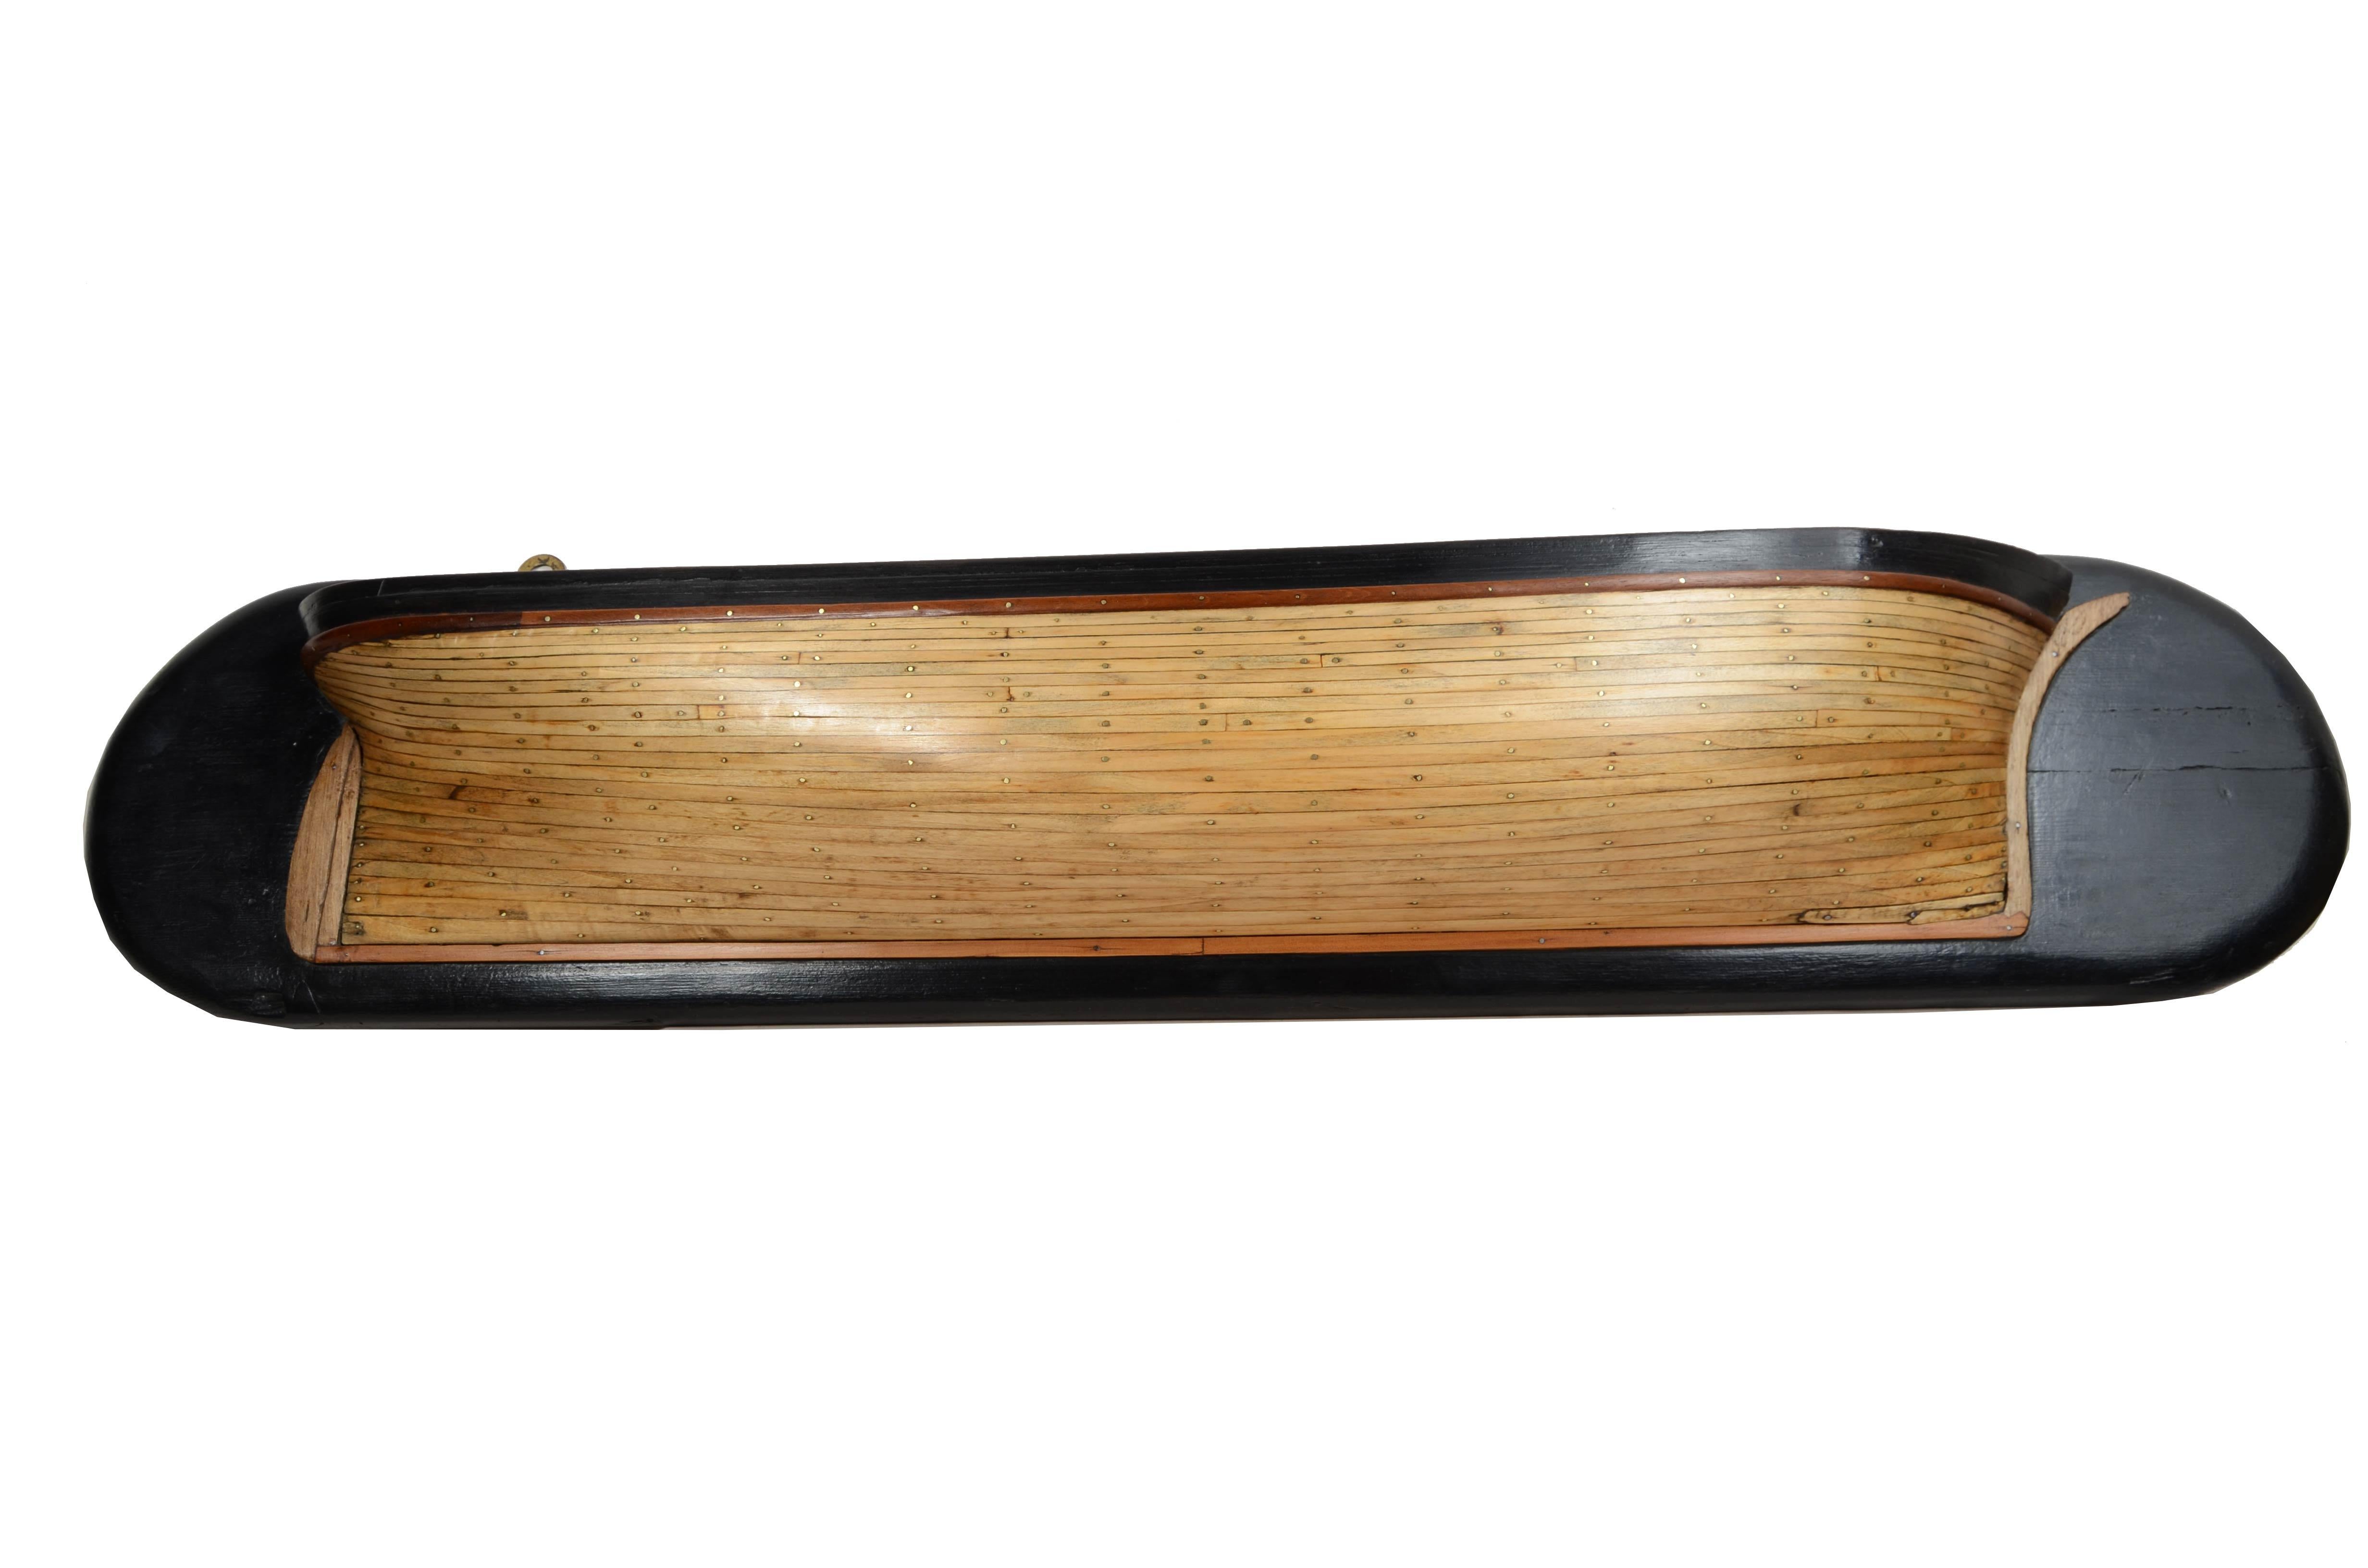 Zweite Hälfte des 19. Jahrhunderts, halber Rumpf eines englischen Schoners  holzplanken genagelt und montiert auf  ebonisiertes Holzbrett. 
Guter Zustand, Board misst 100x 13x21 cm - Zoll 39,4x5,1x8,3. 
Der Halbrumpf, der zur Konstruktion von Booten